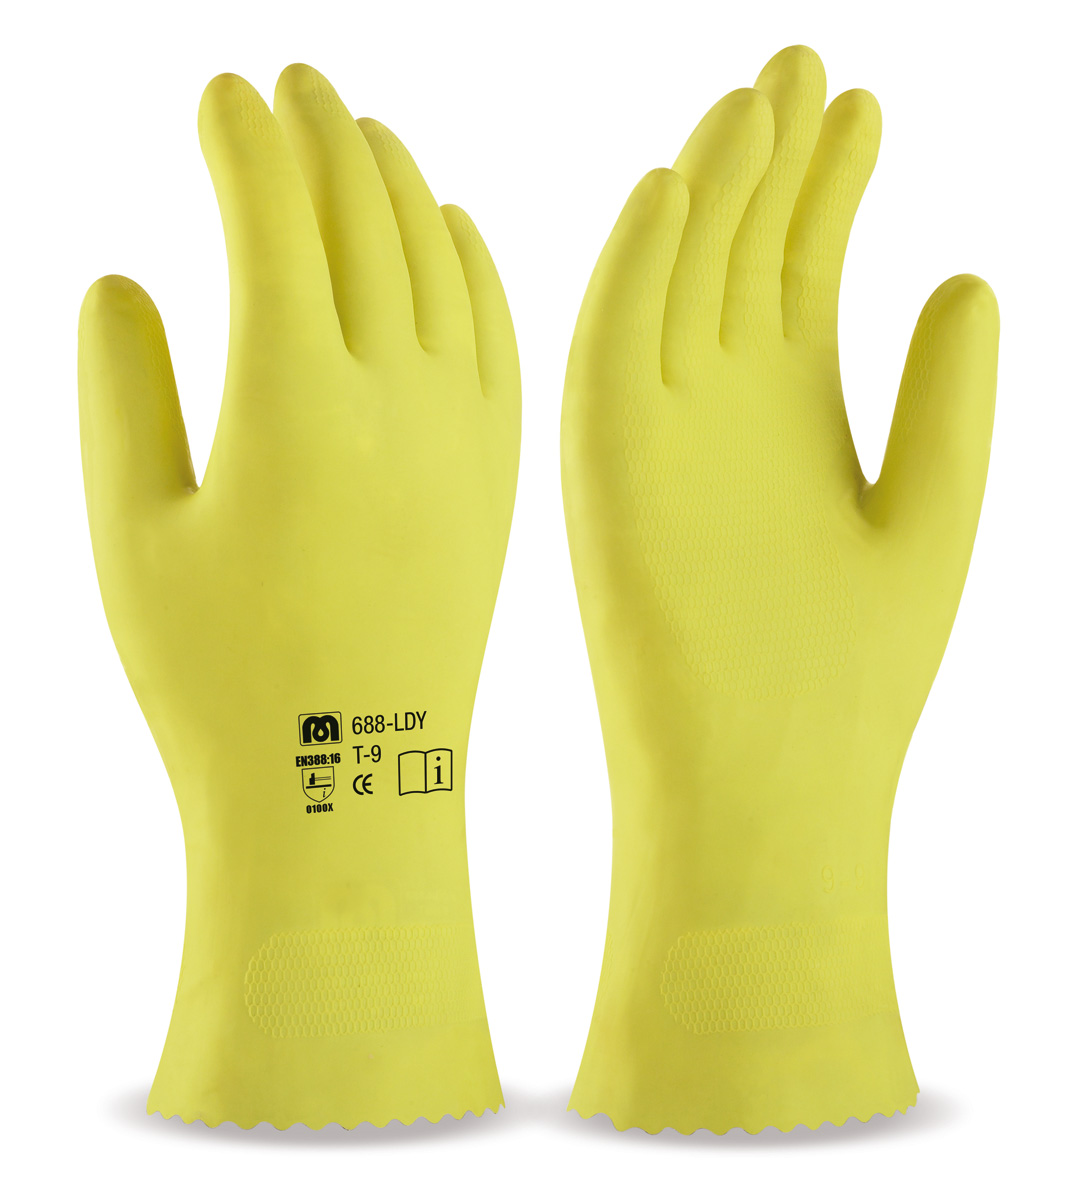 688-LDY Guantes de Trabajo Latex sin soporte Guante tipo doméstico de látex en color amarillo para riesgos mecánicos superficiales.